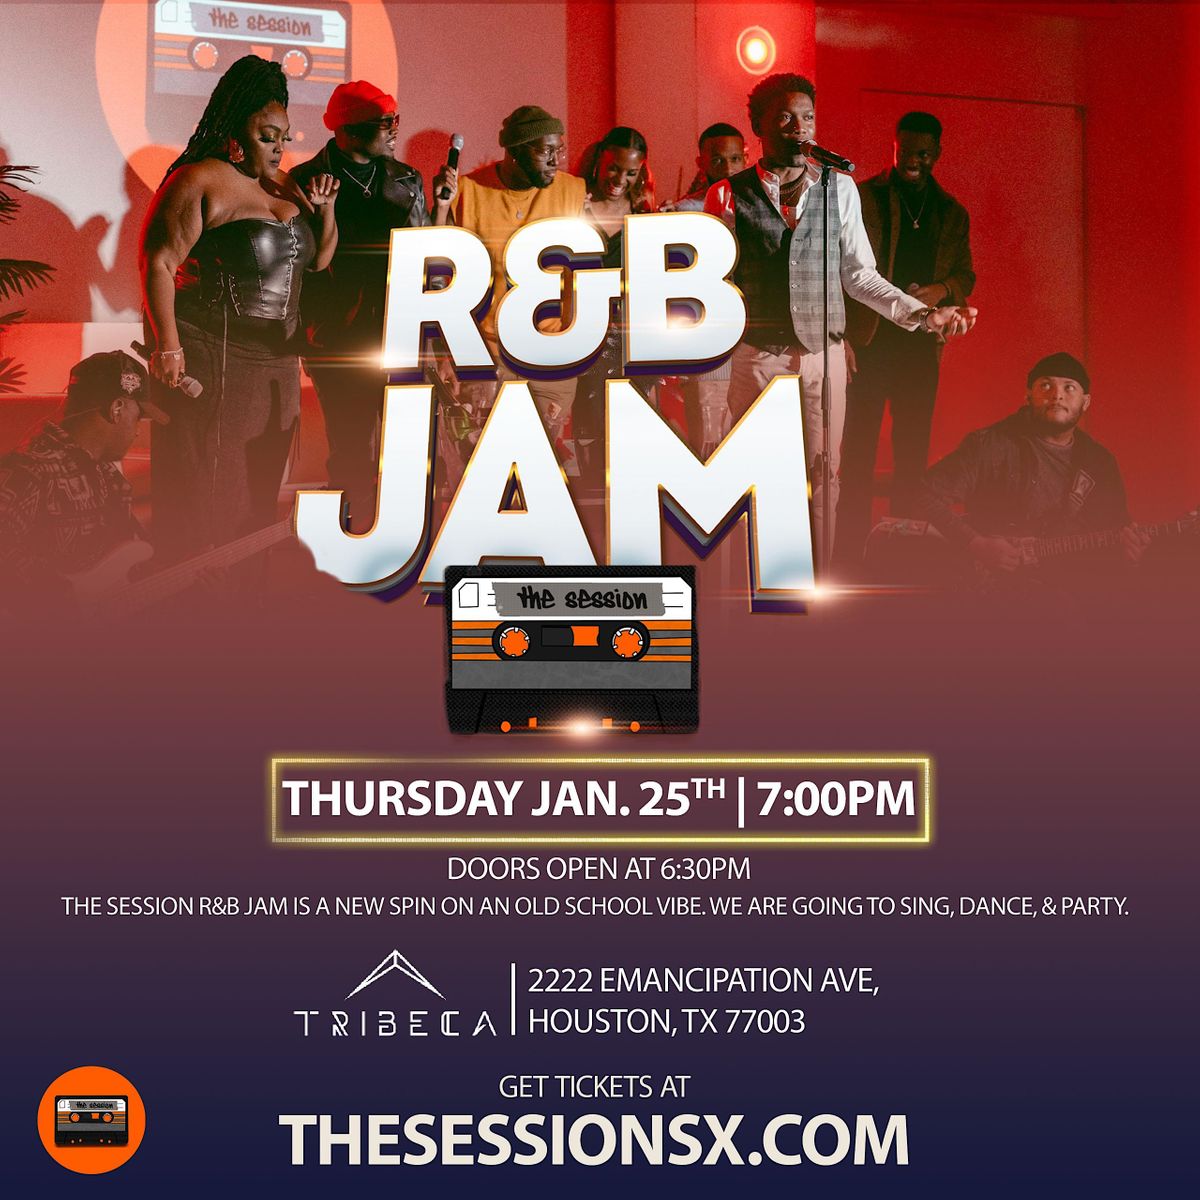 The Session R&B Jam "April"